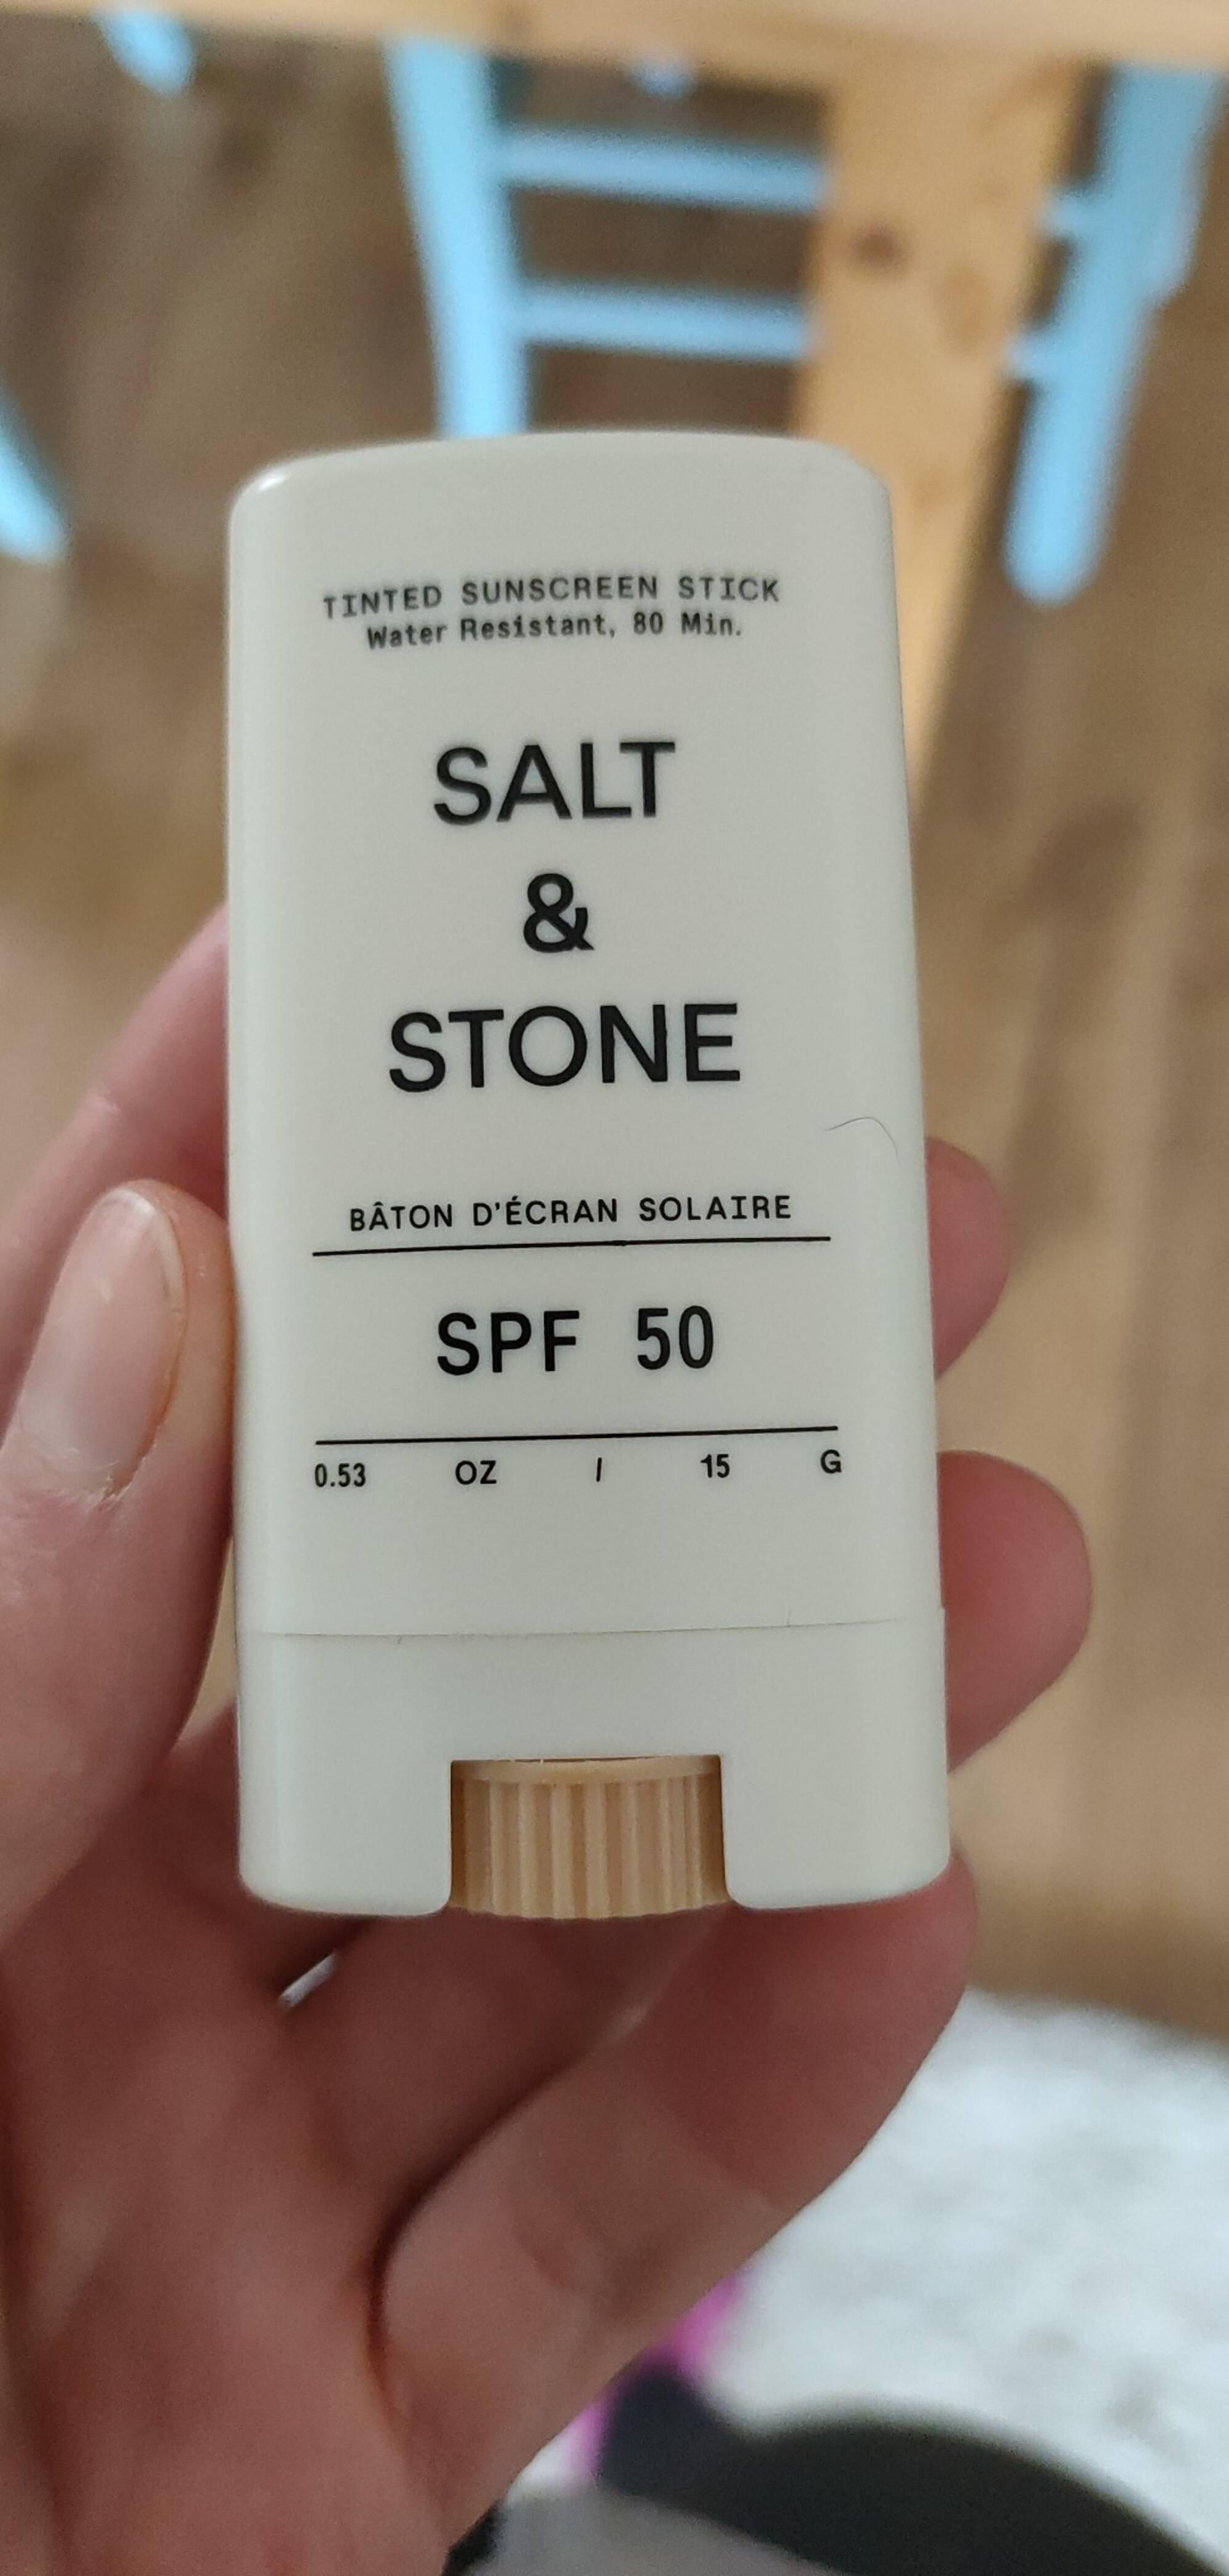 SALT & STONE - Bâton d'écran solaire SPF 50